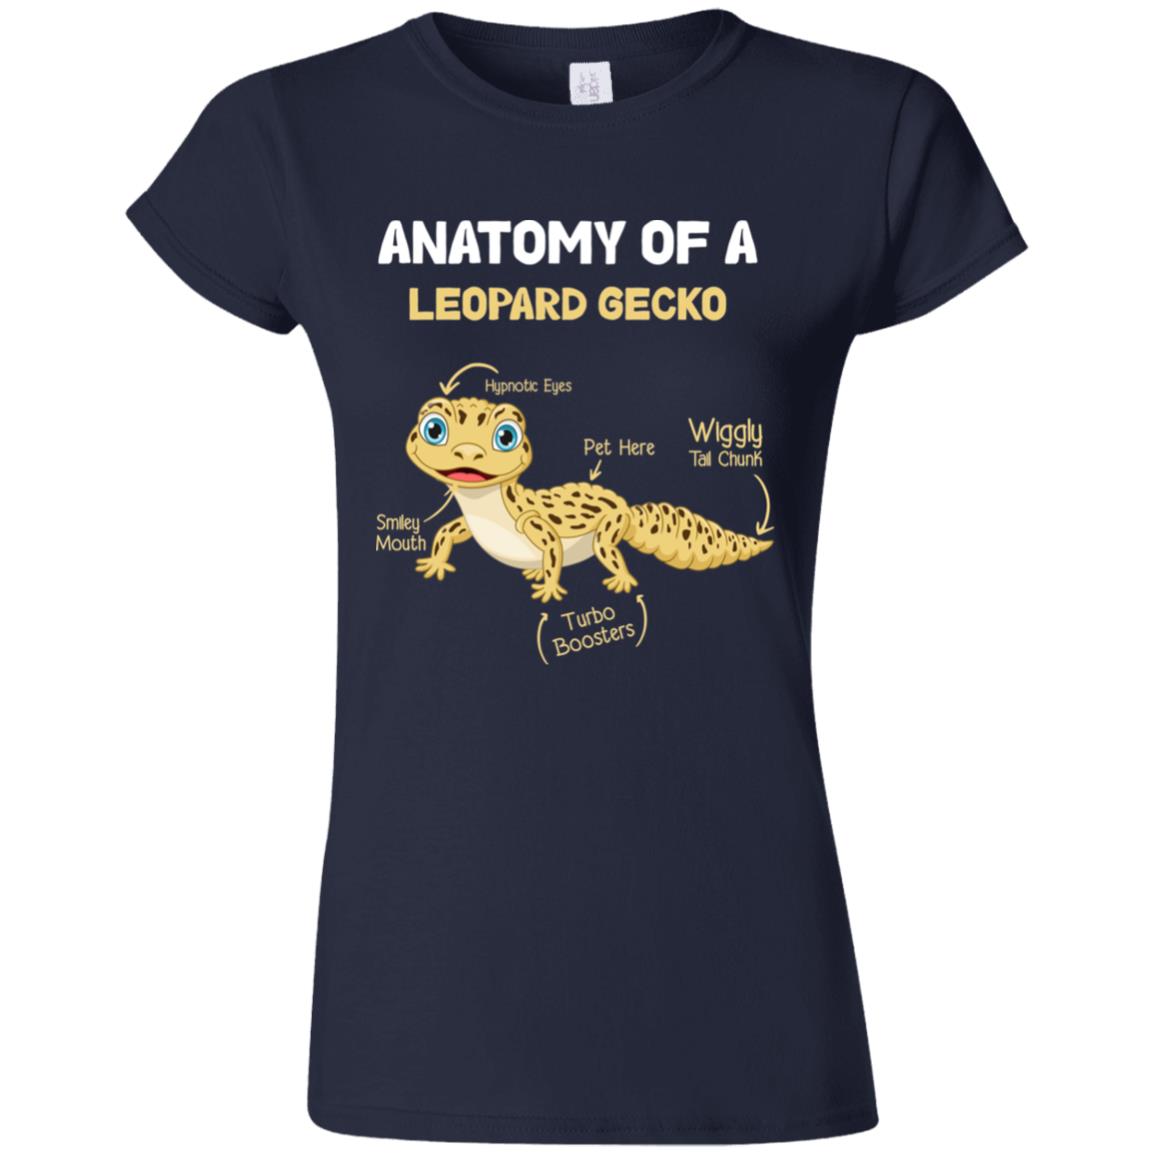 Anatomy of A Leopard Gecko - Women's T-Shirt